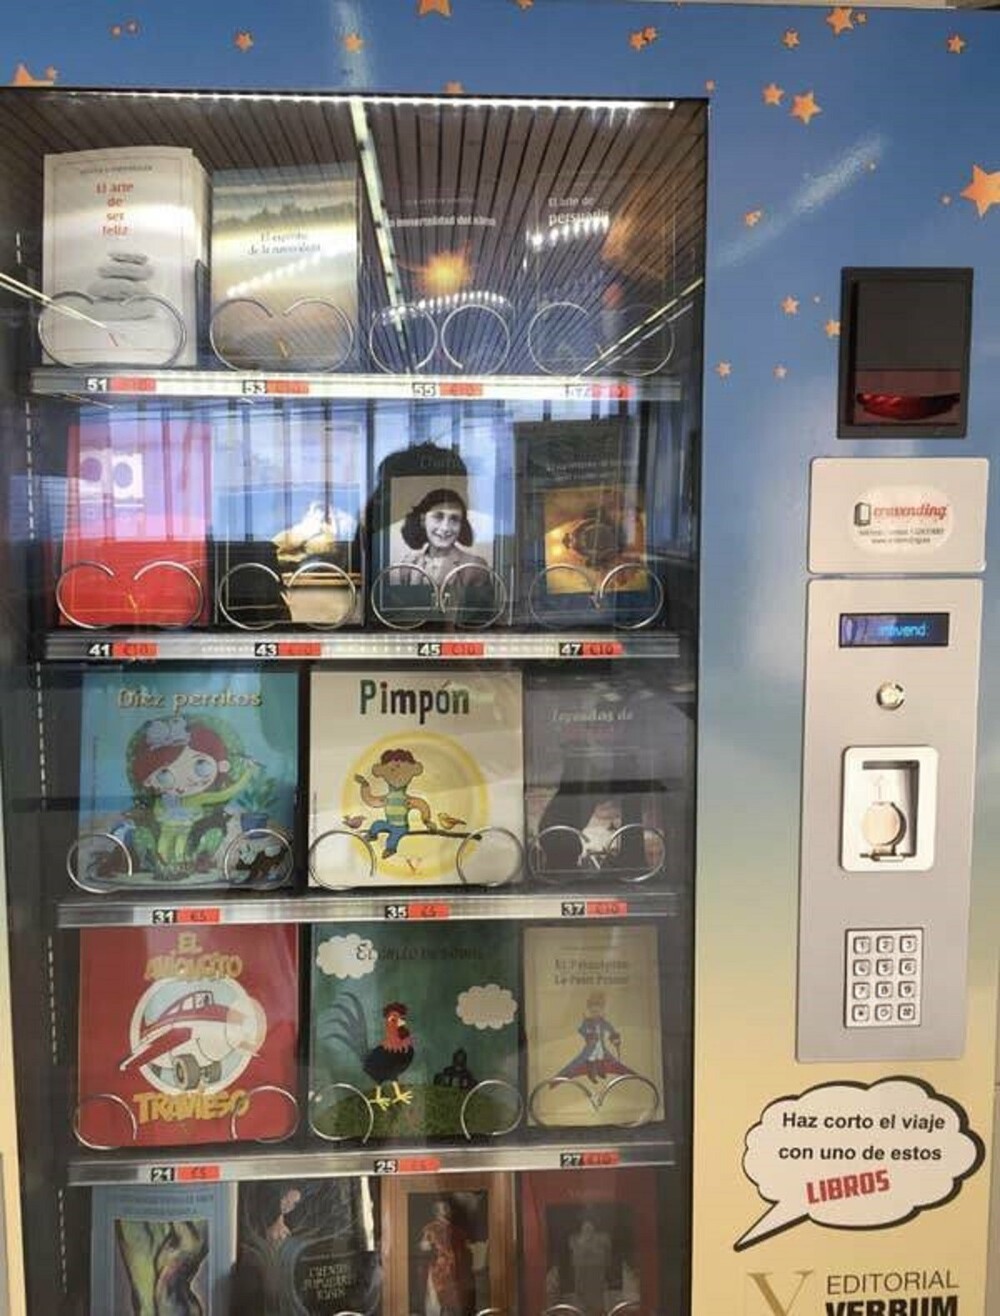 32. Торговый автомат с книгами в Испании